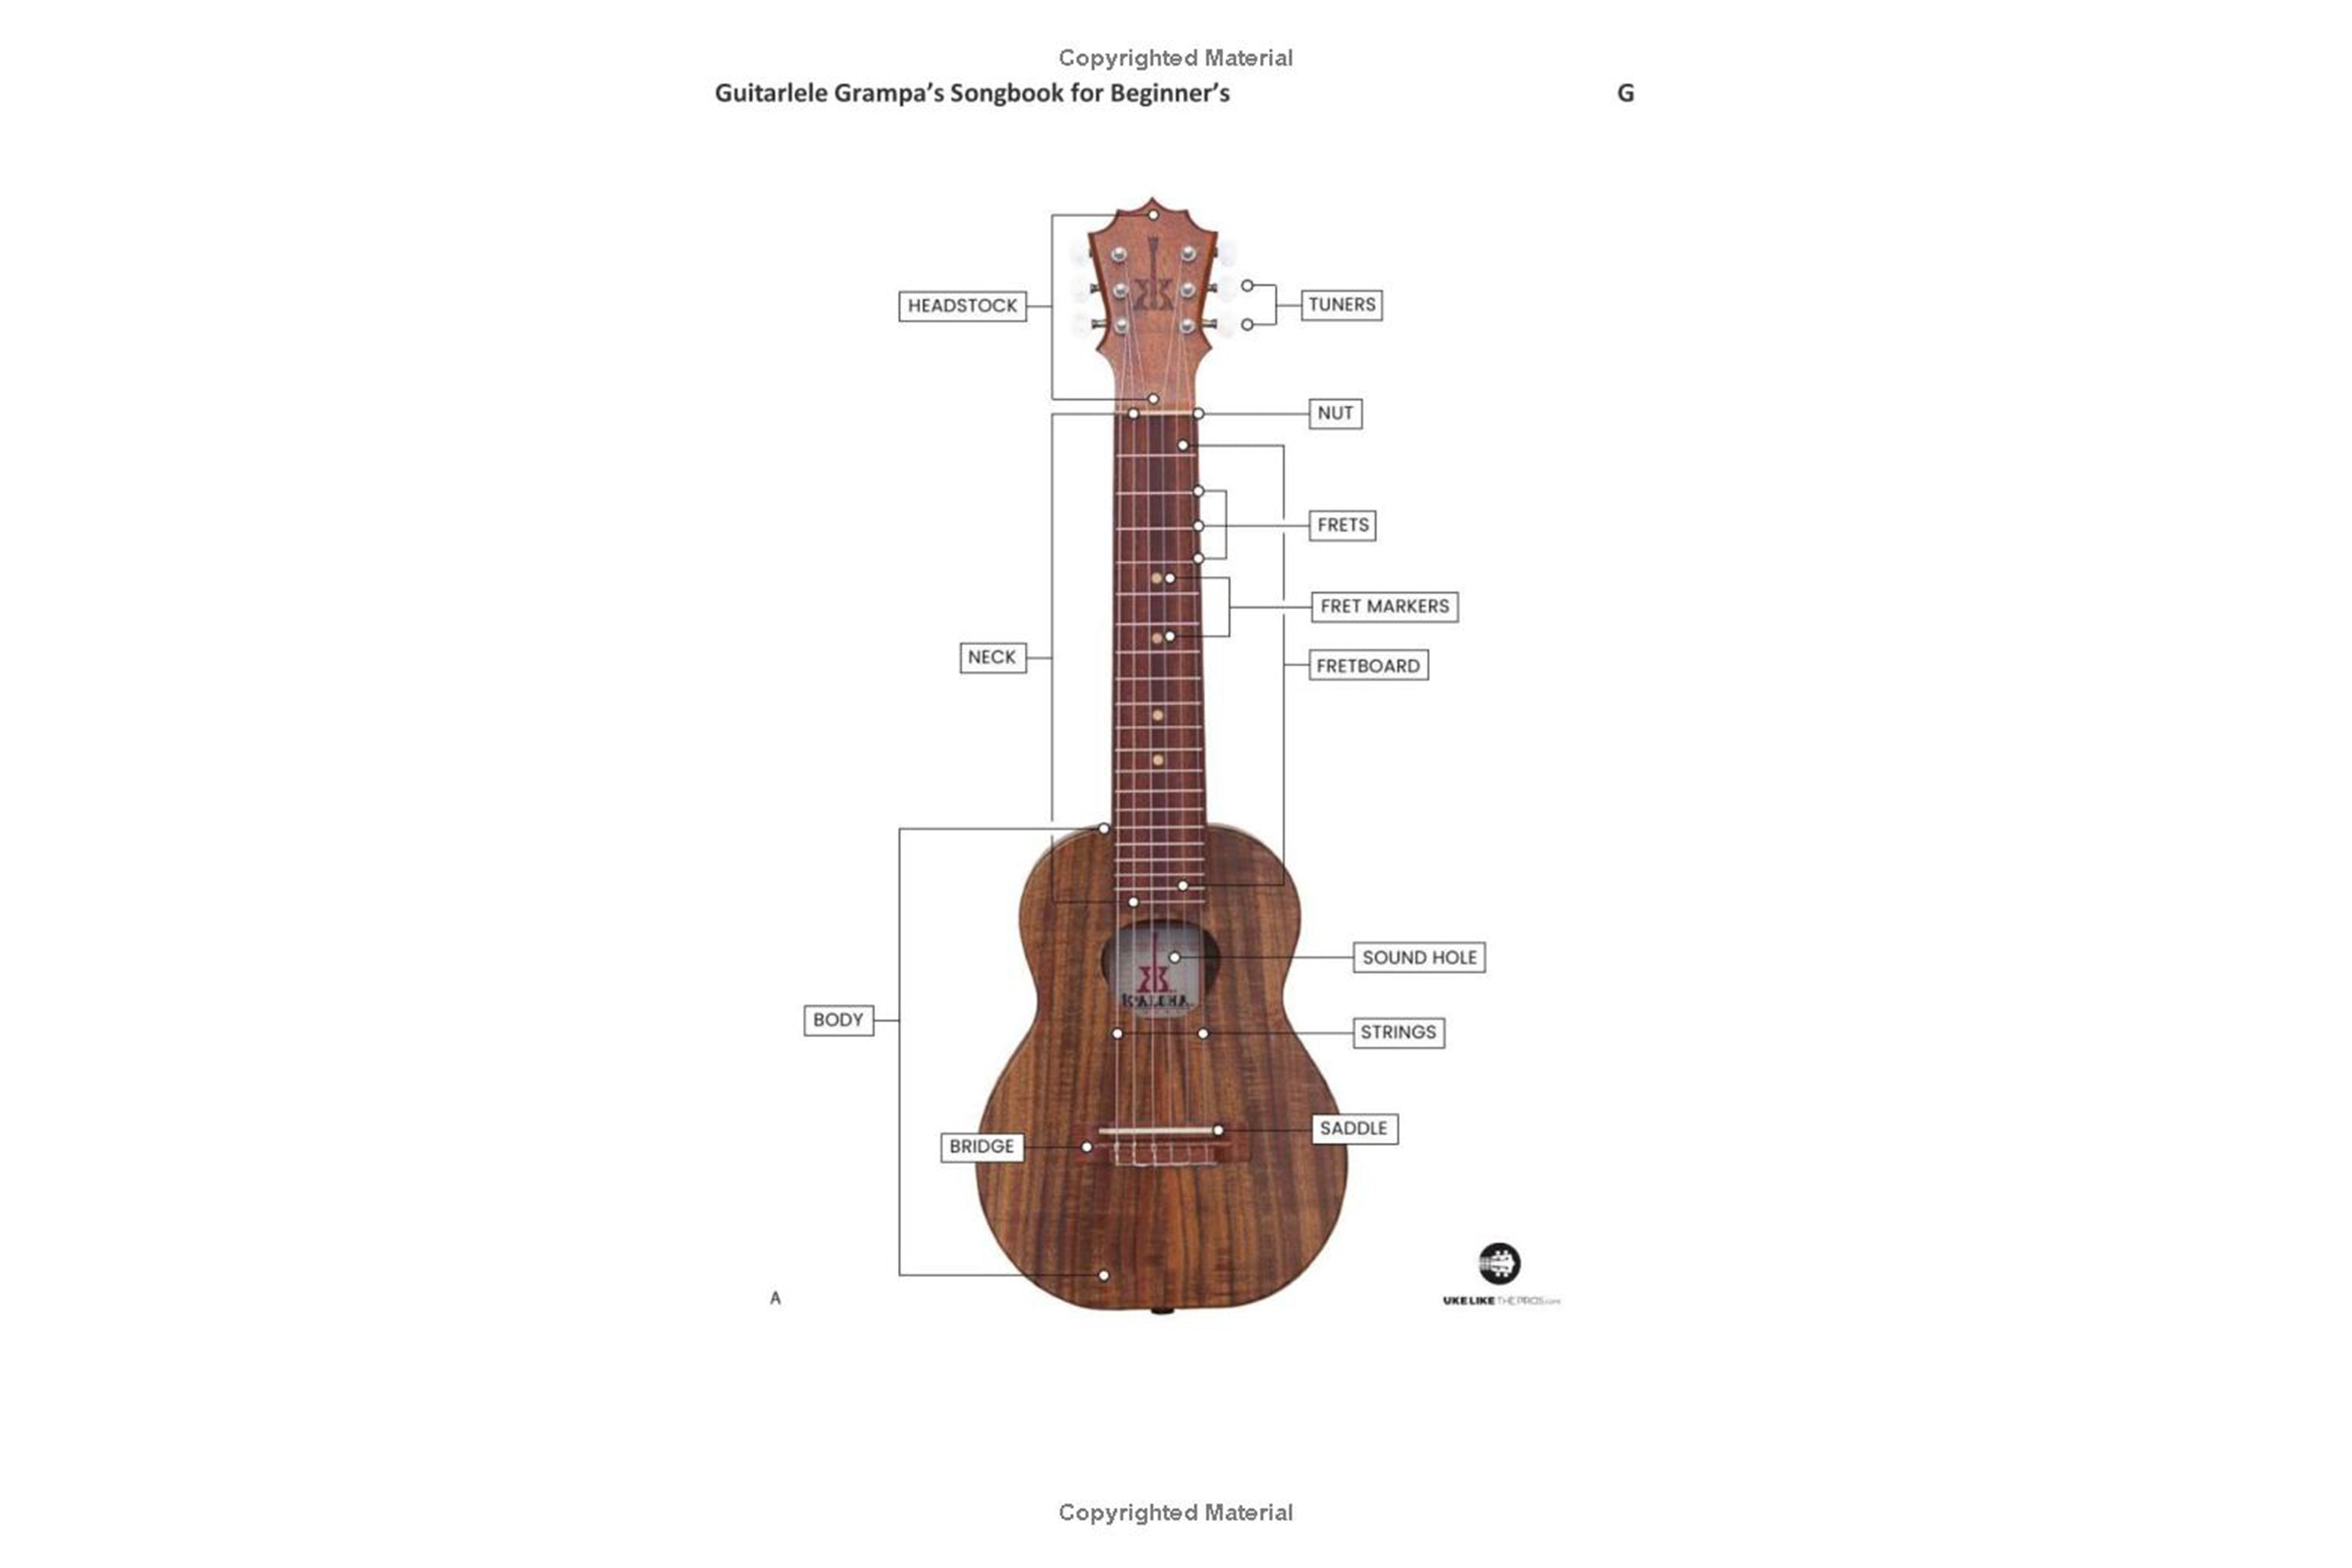 Guitarlele Grampa's Songbook for Beginners